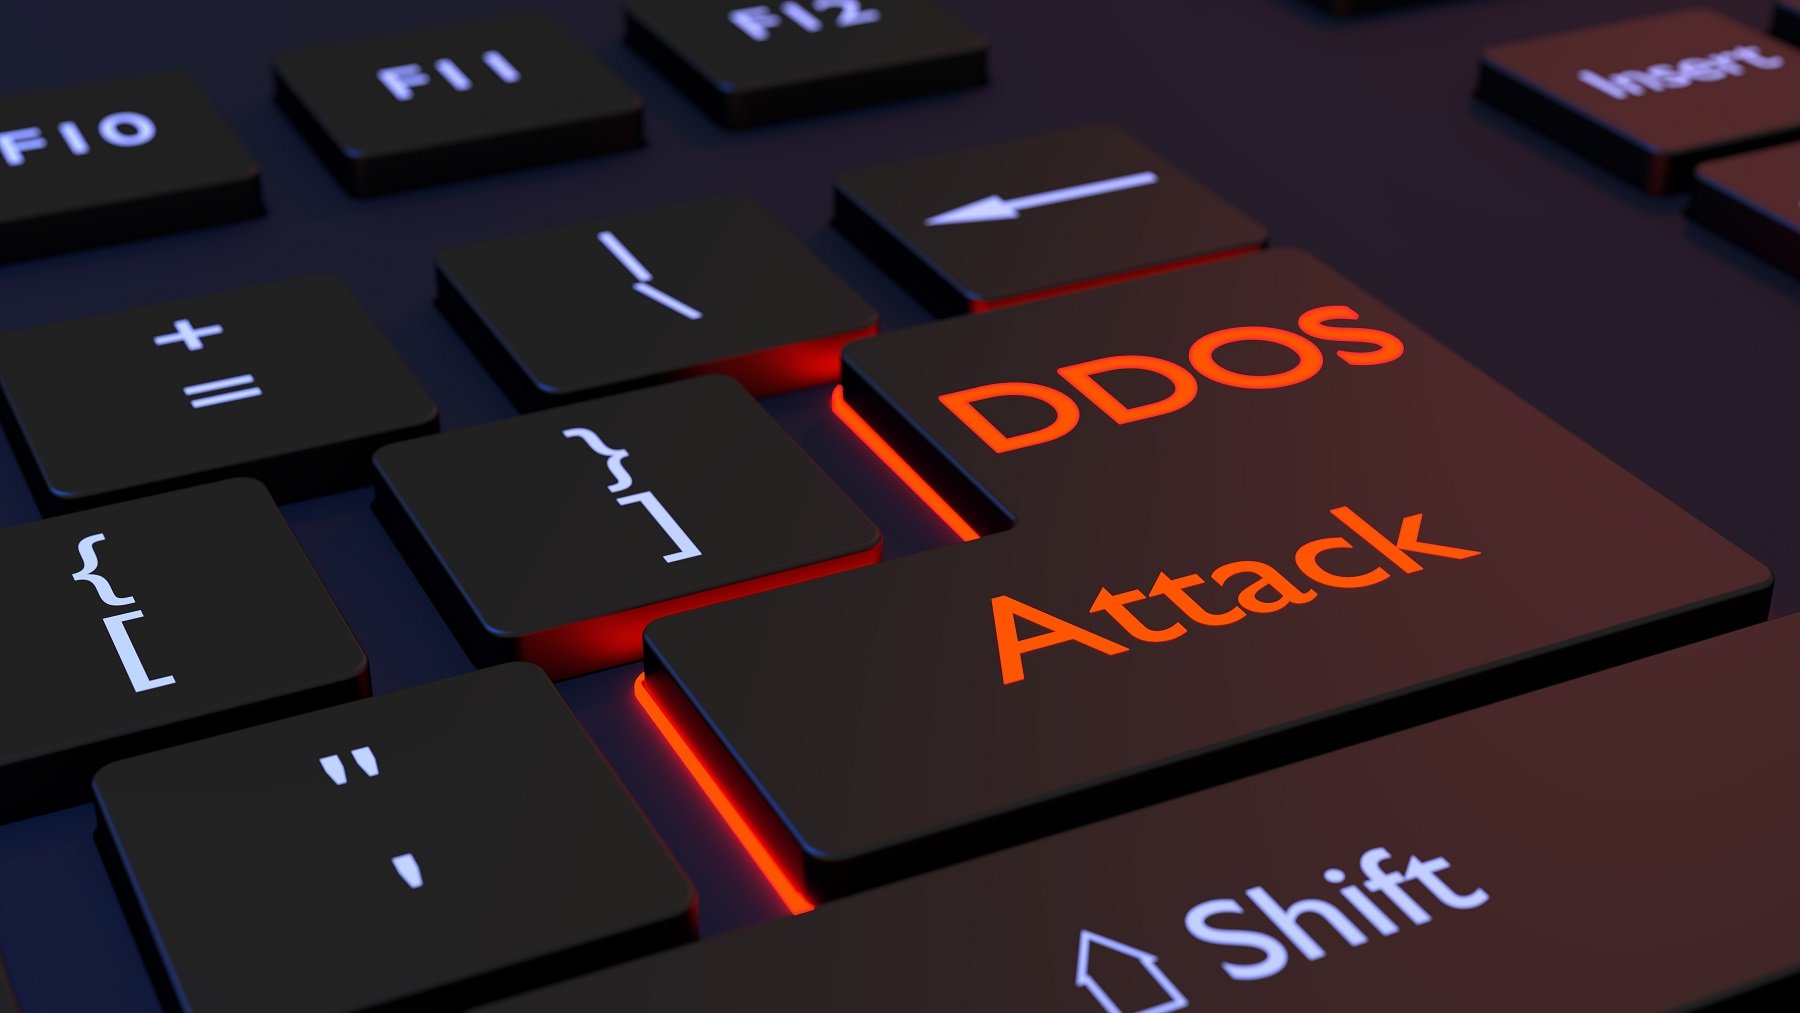 Dos- oder DDos-Attacken mittels IP-Spoofing sind erschreckend einfach, darum beschäftigen sich Sicherheitsexperten und IT-Spezialisten schon seit Jahrzehnten damit.